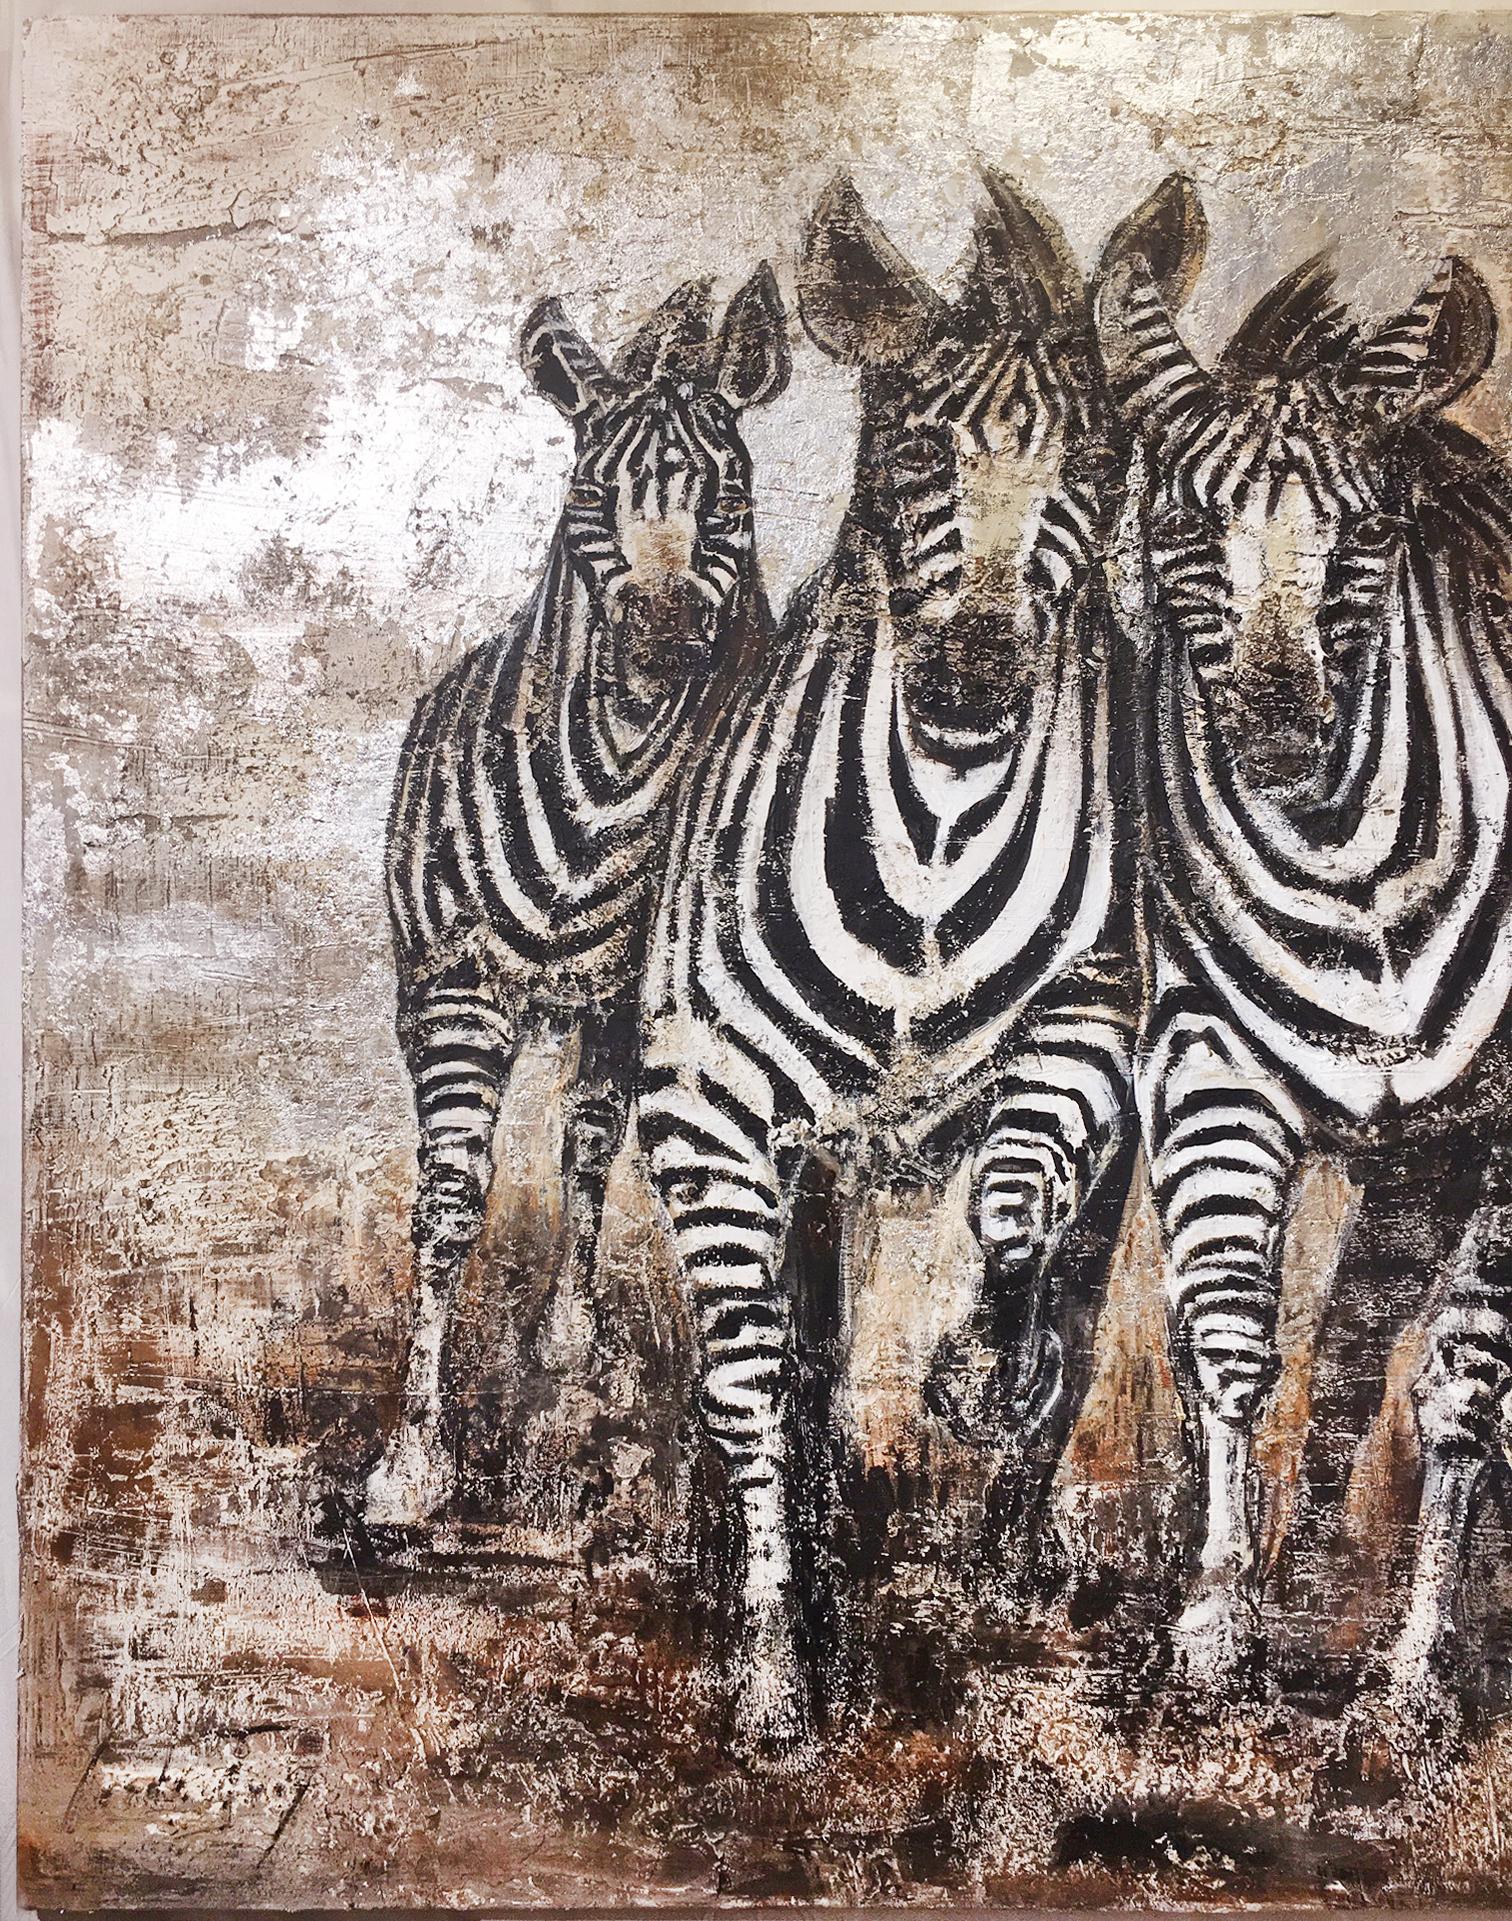 Malerei Zebras Darstellung von Zebras,
auf Leinwand, bemalt mit Marmorstaub.
Mixte-Techniken. Gemälde von Carole Ivoy.